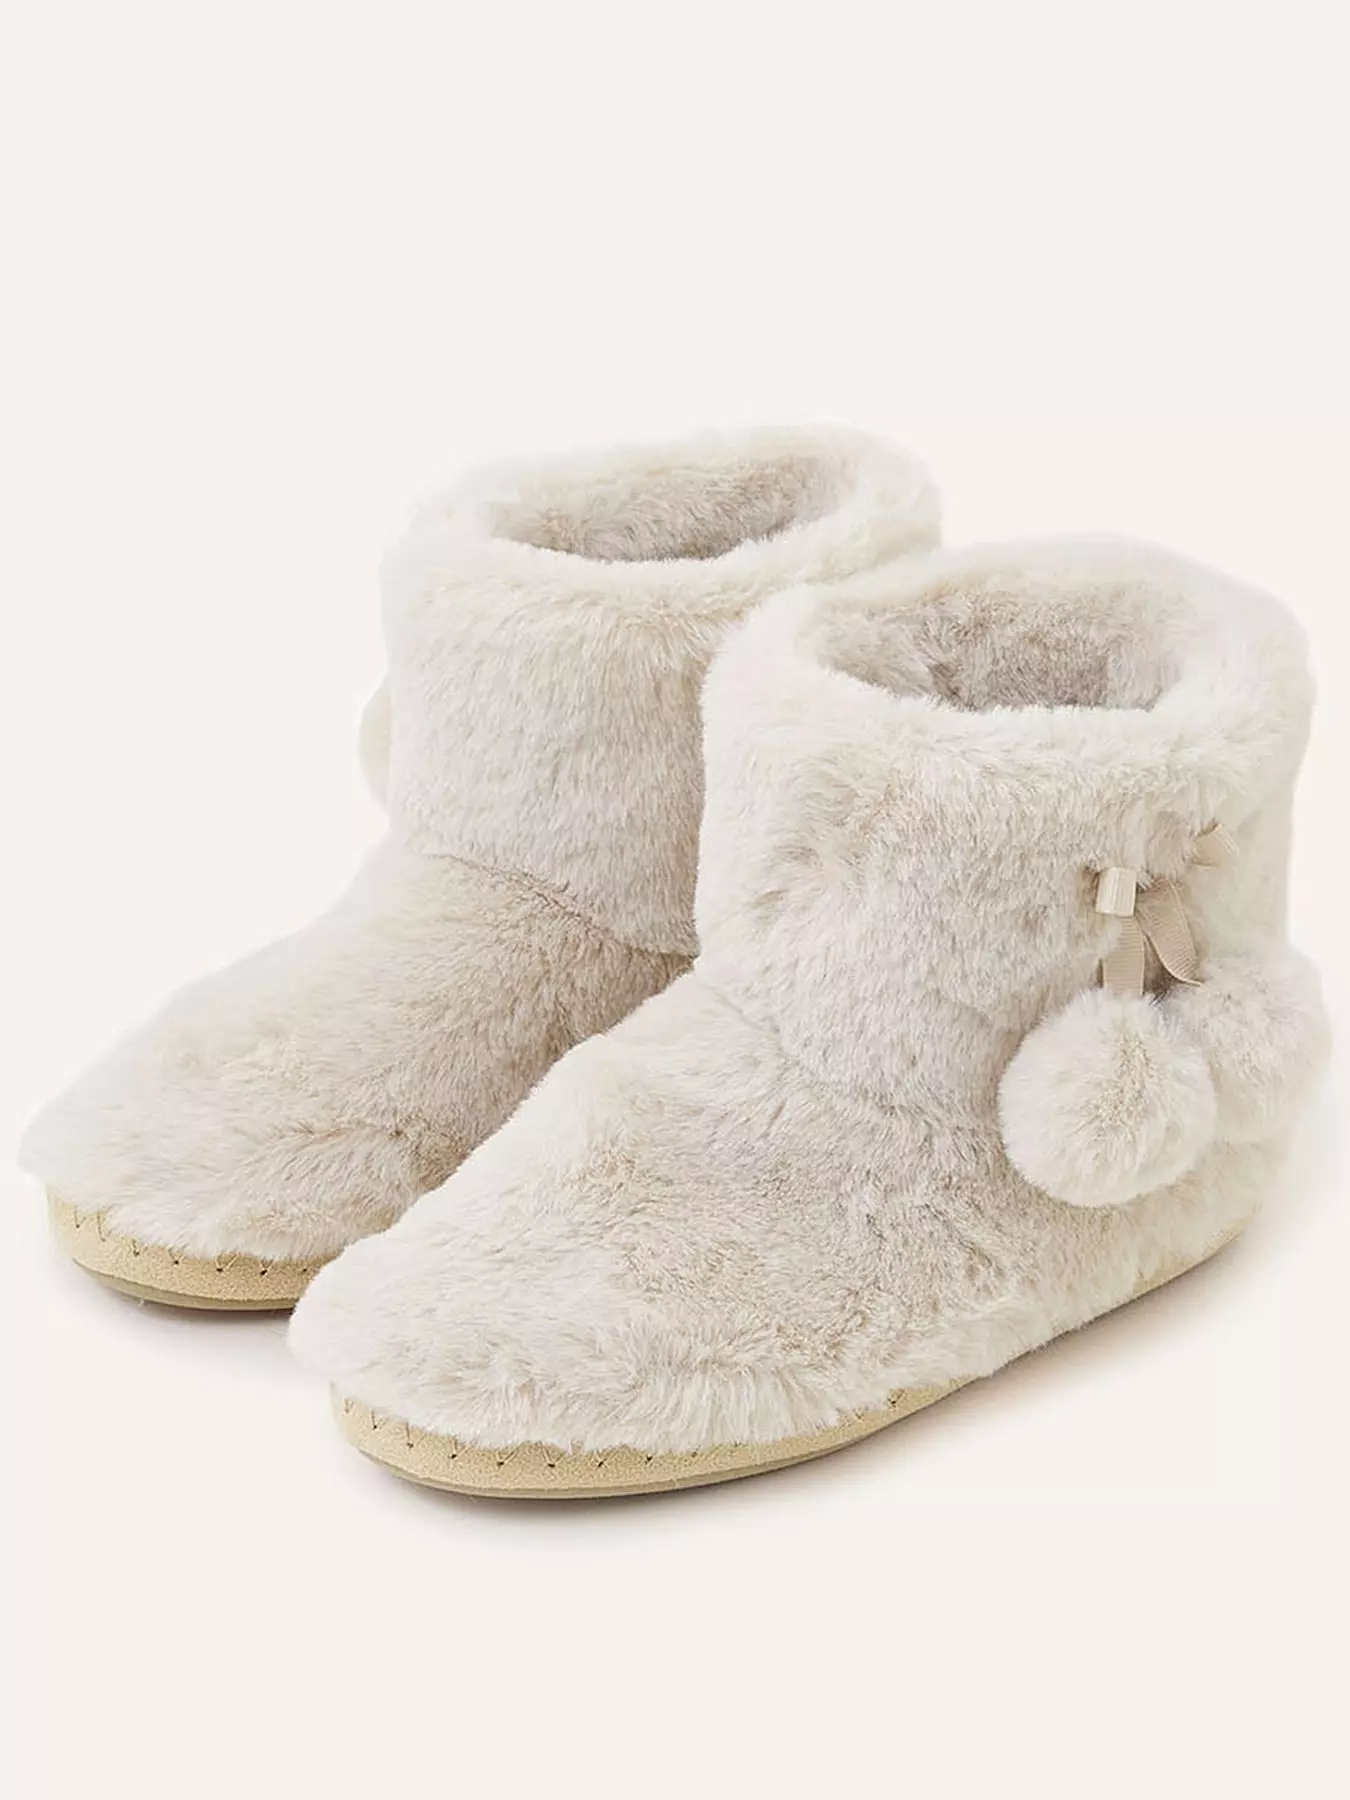 DL Women's Cute Bootie Slippers Fluffy Plush Fleece Memory Foam House Shoes  Winter Booty Slippers